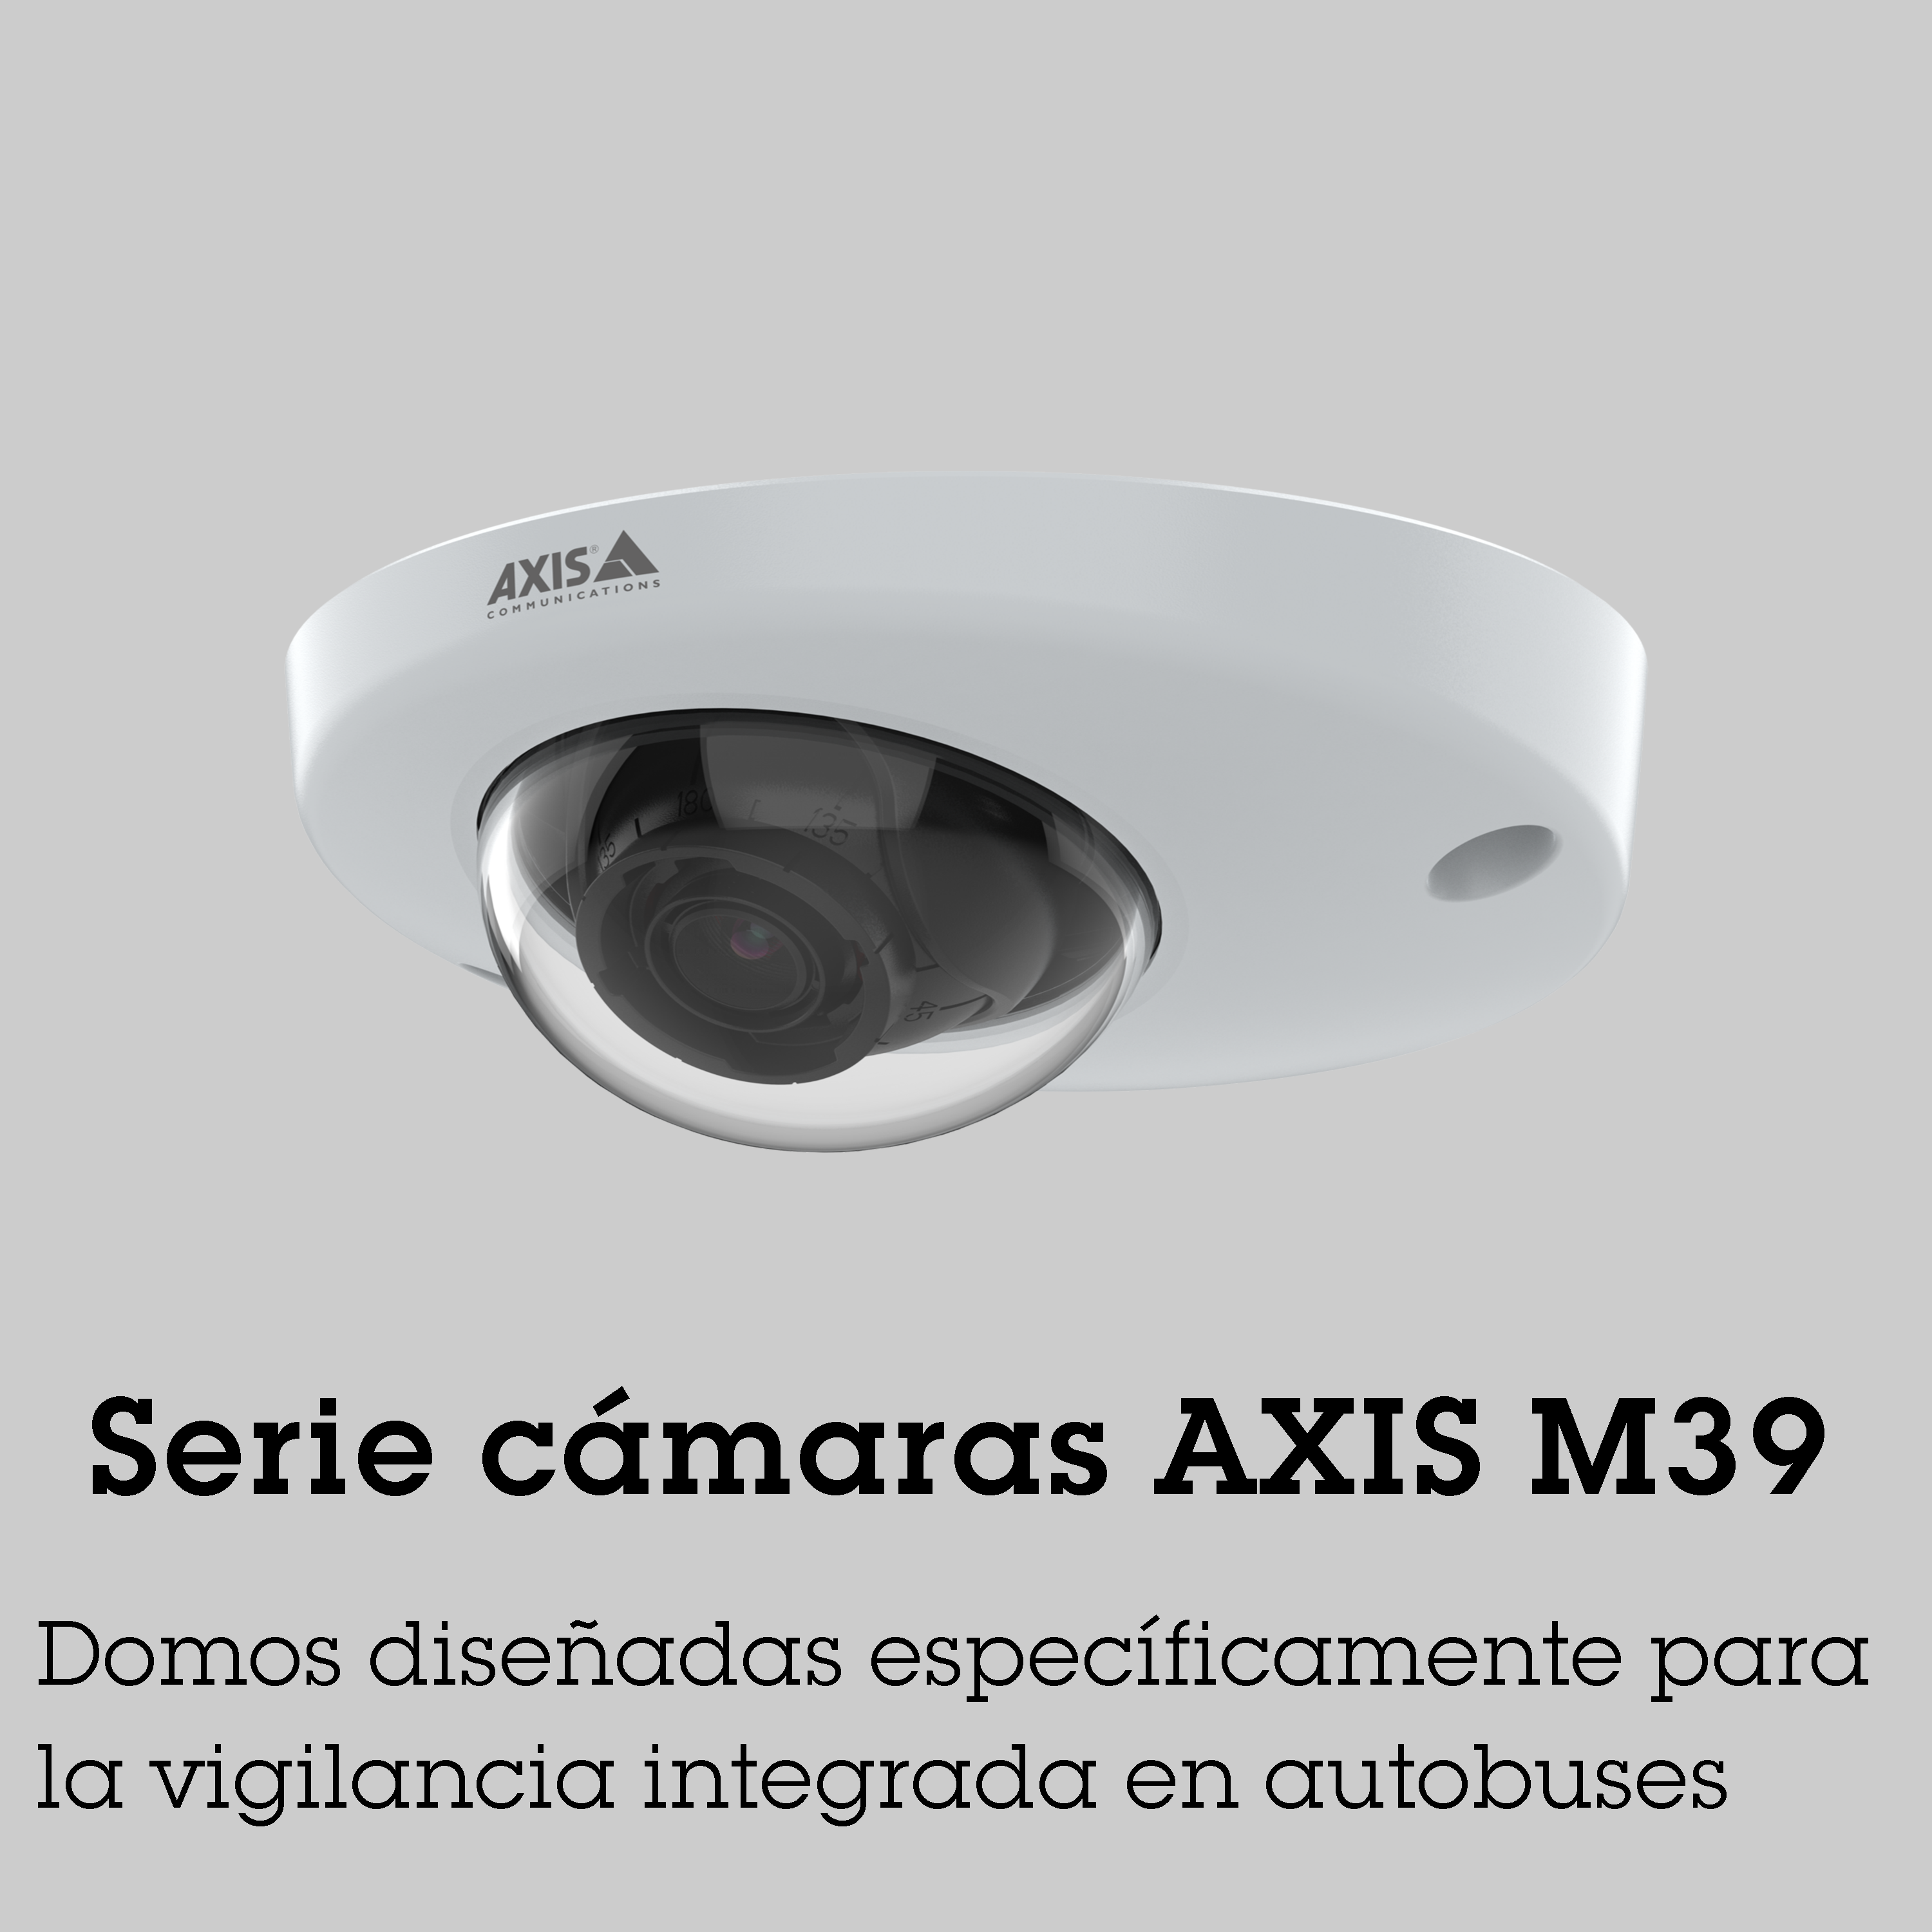 Serie cámaras Axis M39